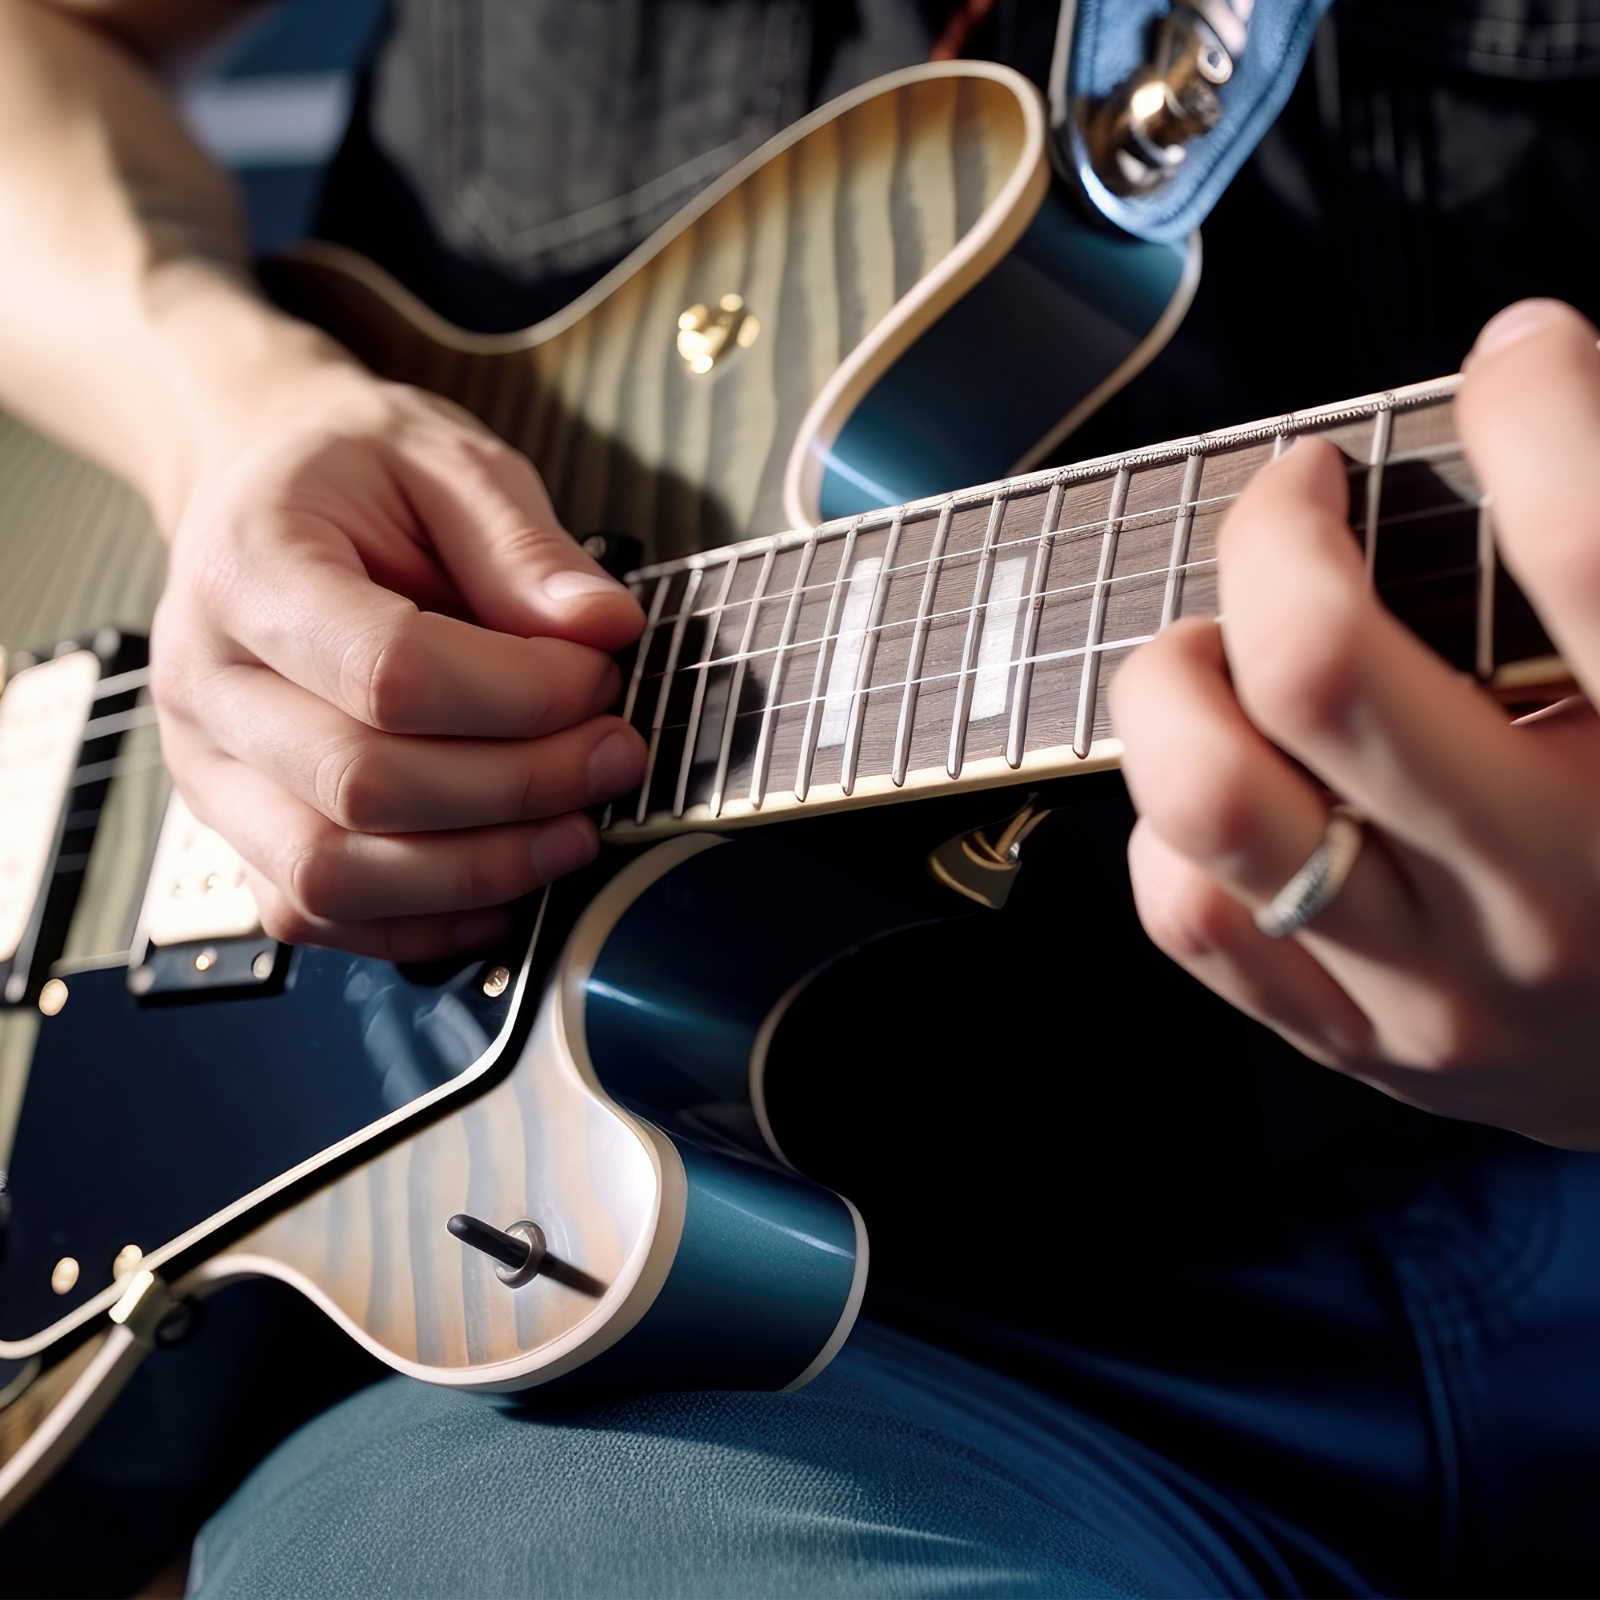 45-minütiger E-Gitarrenunterricht für Erwachsene : photo 1